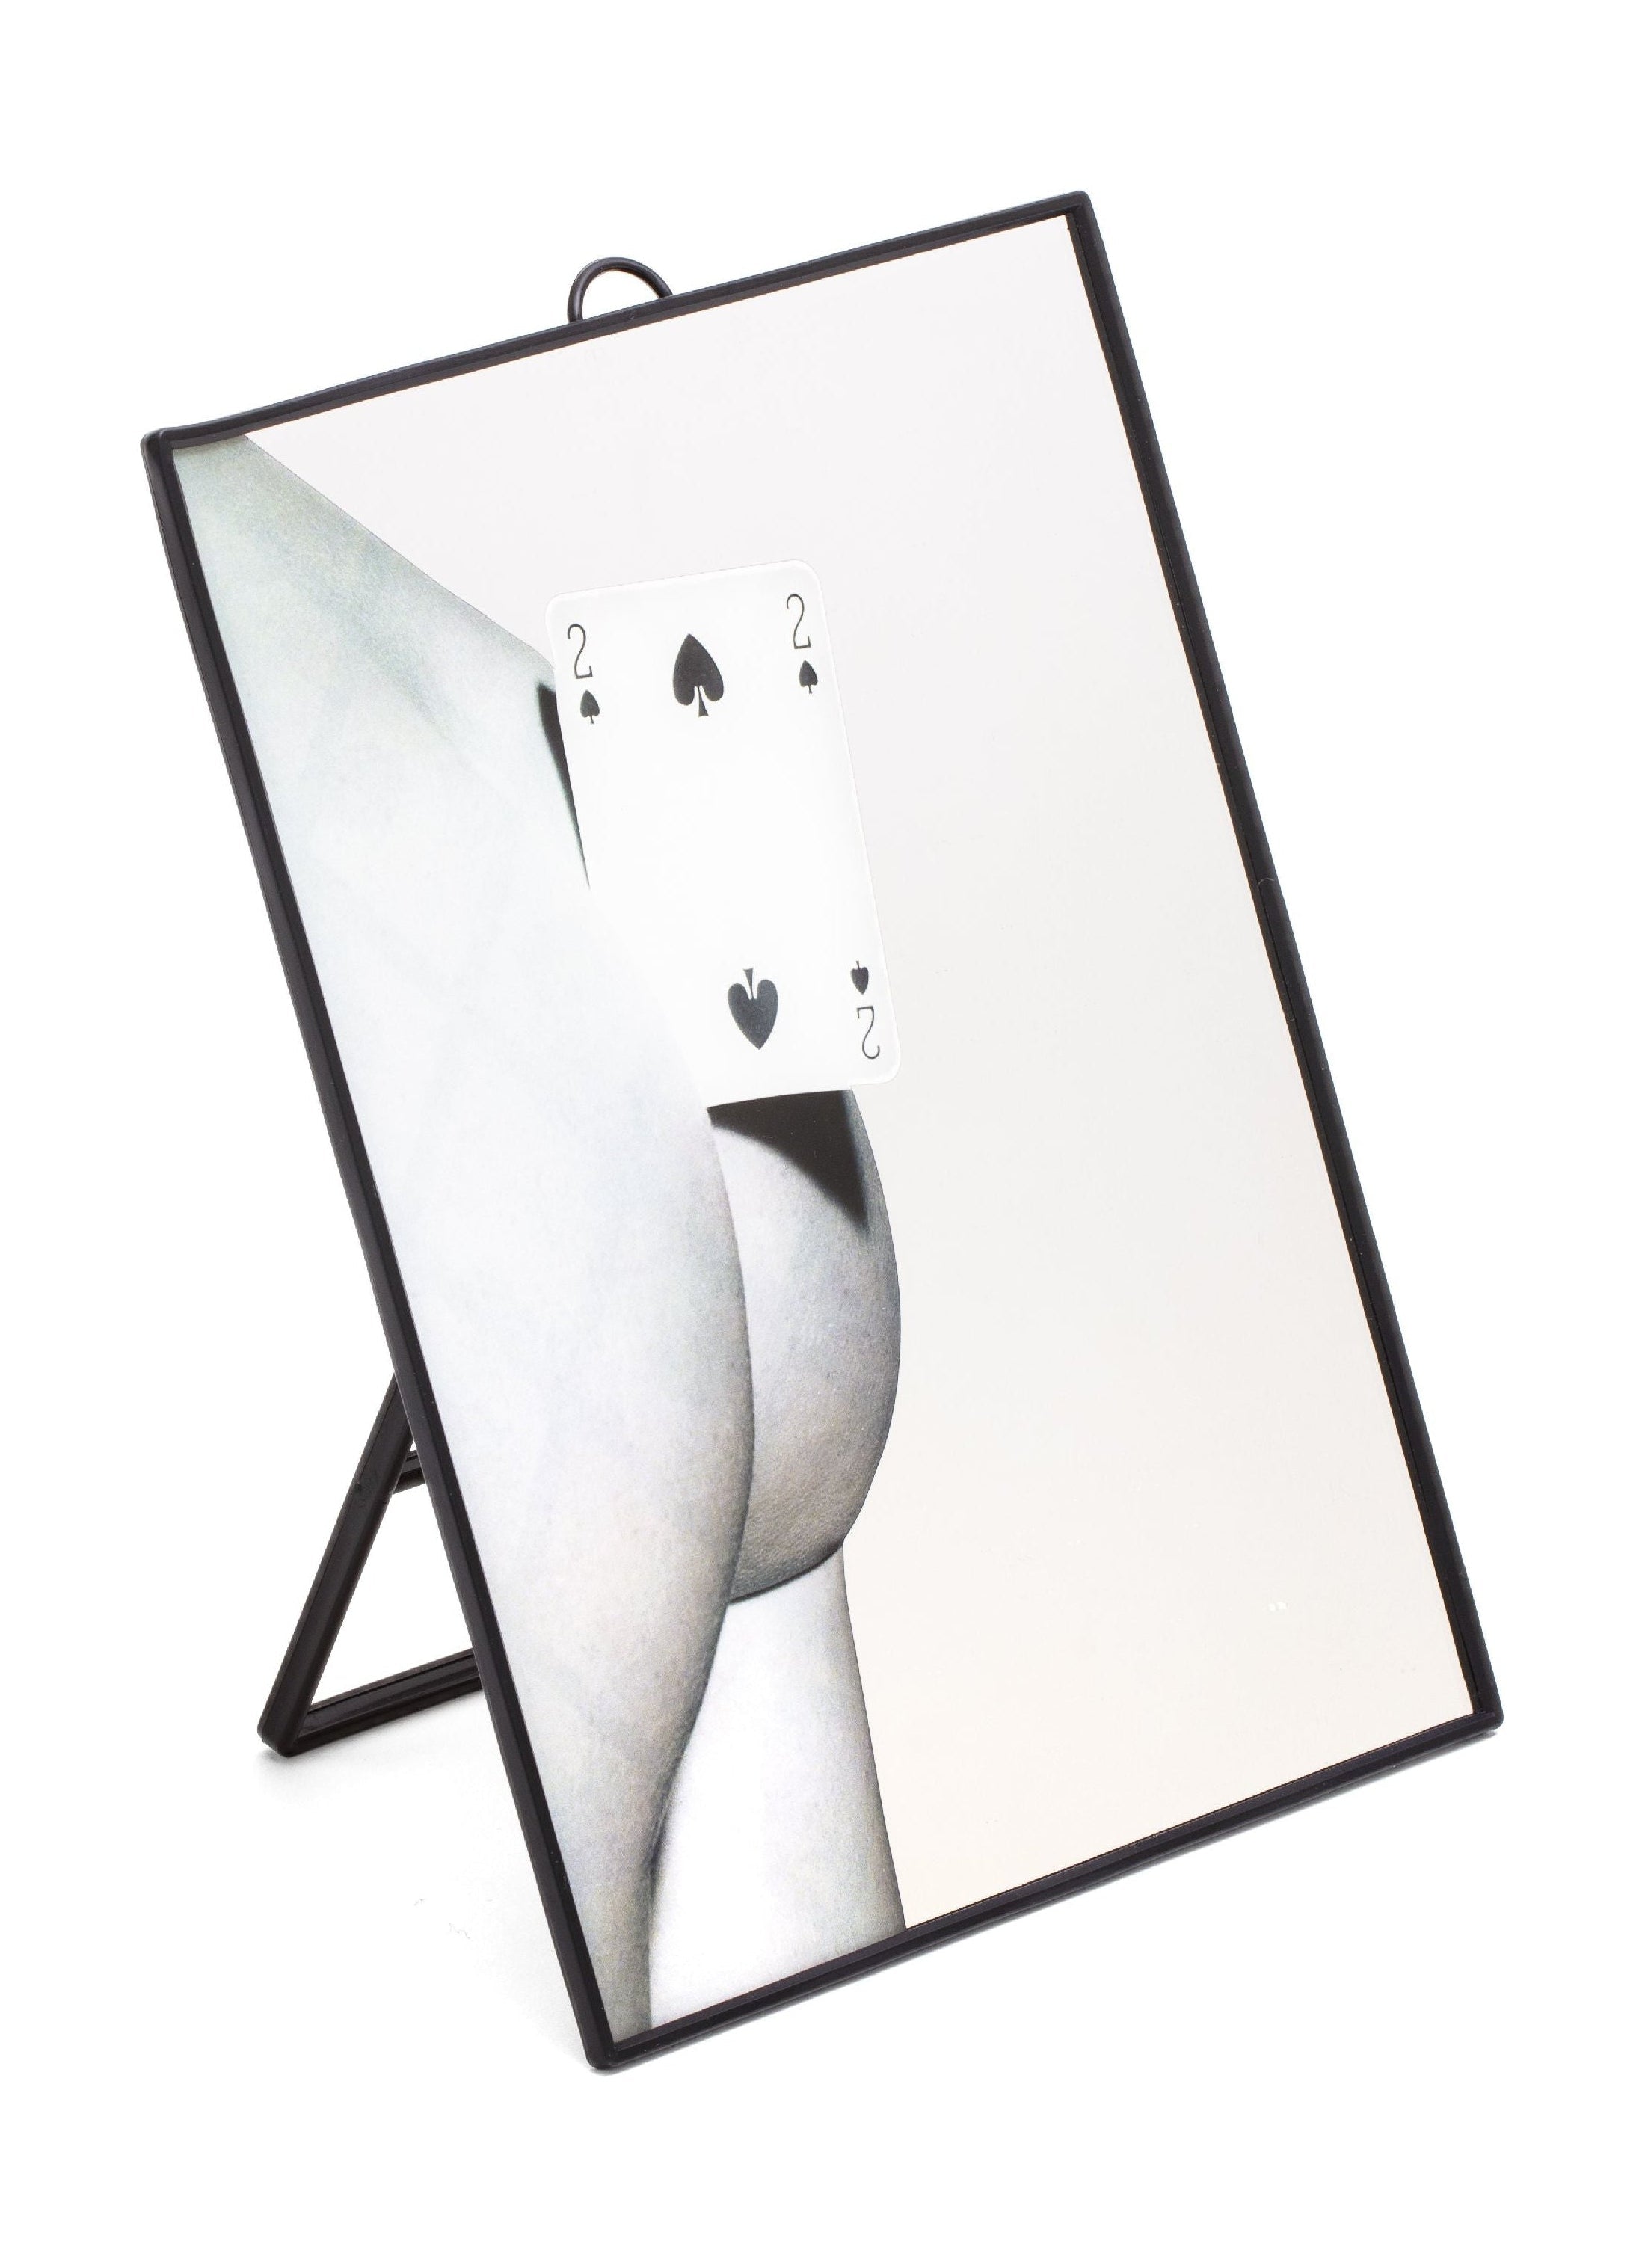 Mirror de papel para el inodoro Seletti, dos de las espadas